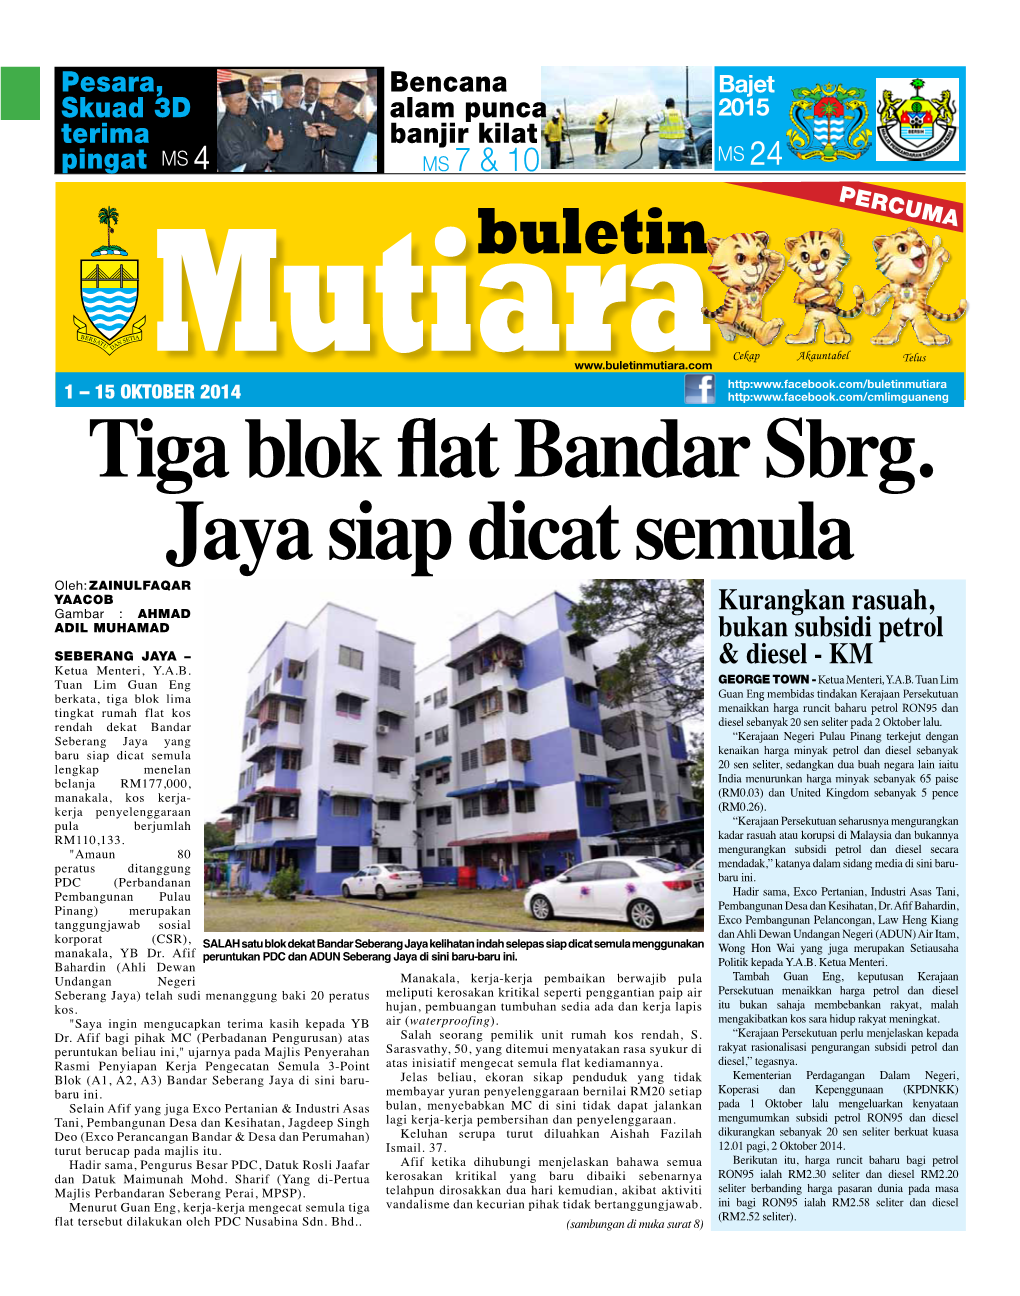 Tiga Blok Flat Bandar Sbrg. Jaya Siap Dicat Semula